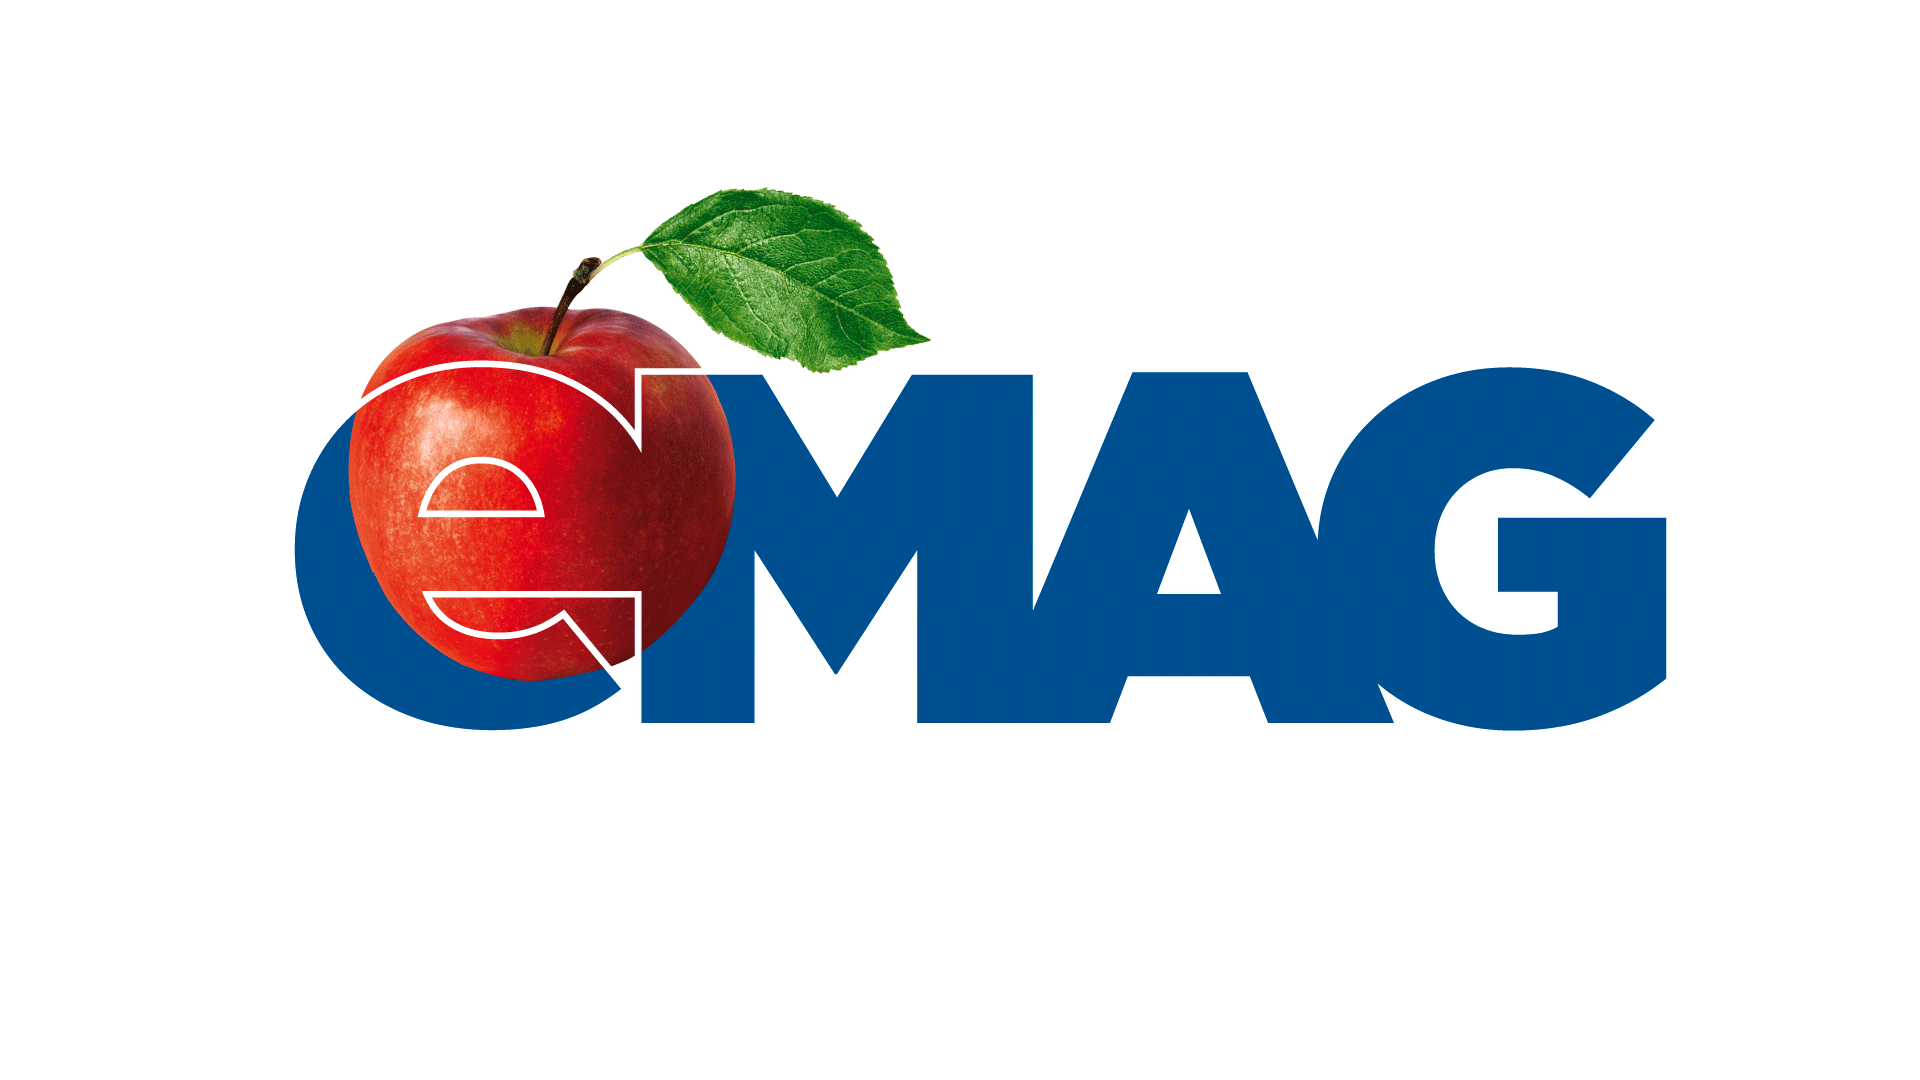 01-eMAG-rebranding-logo-1920